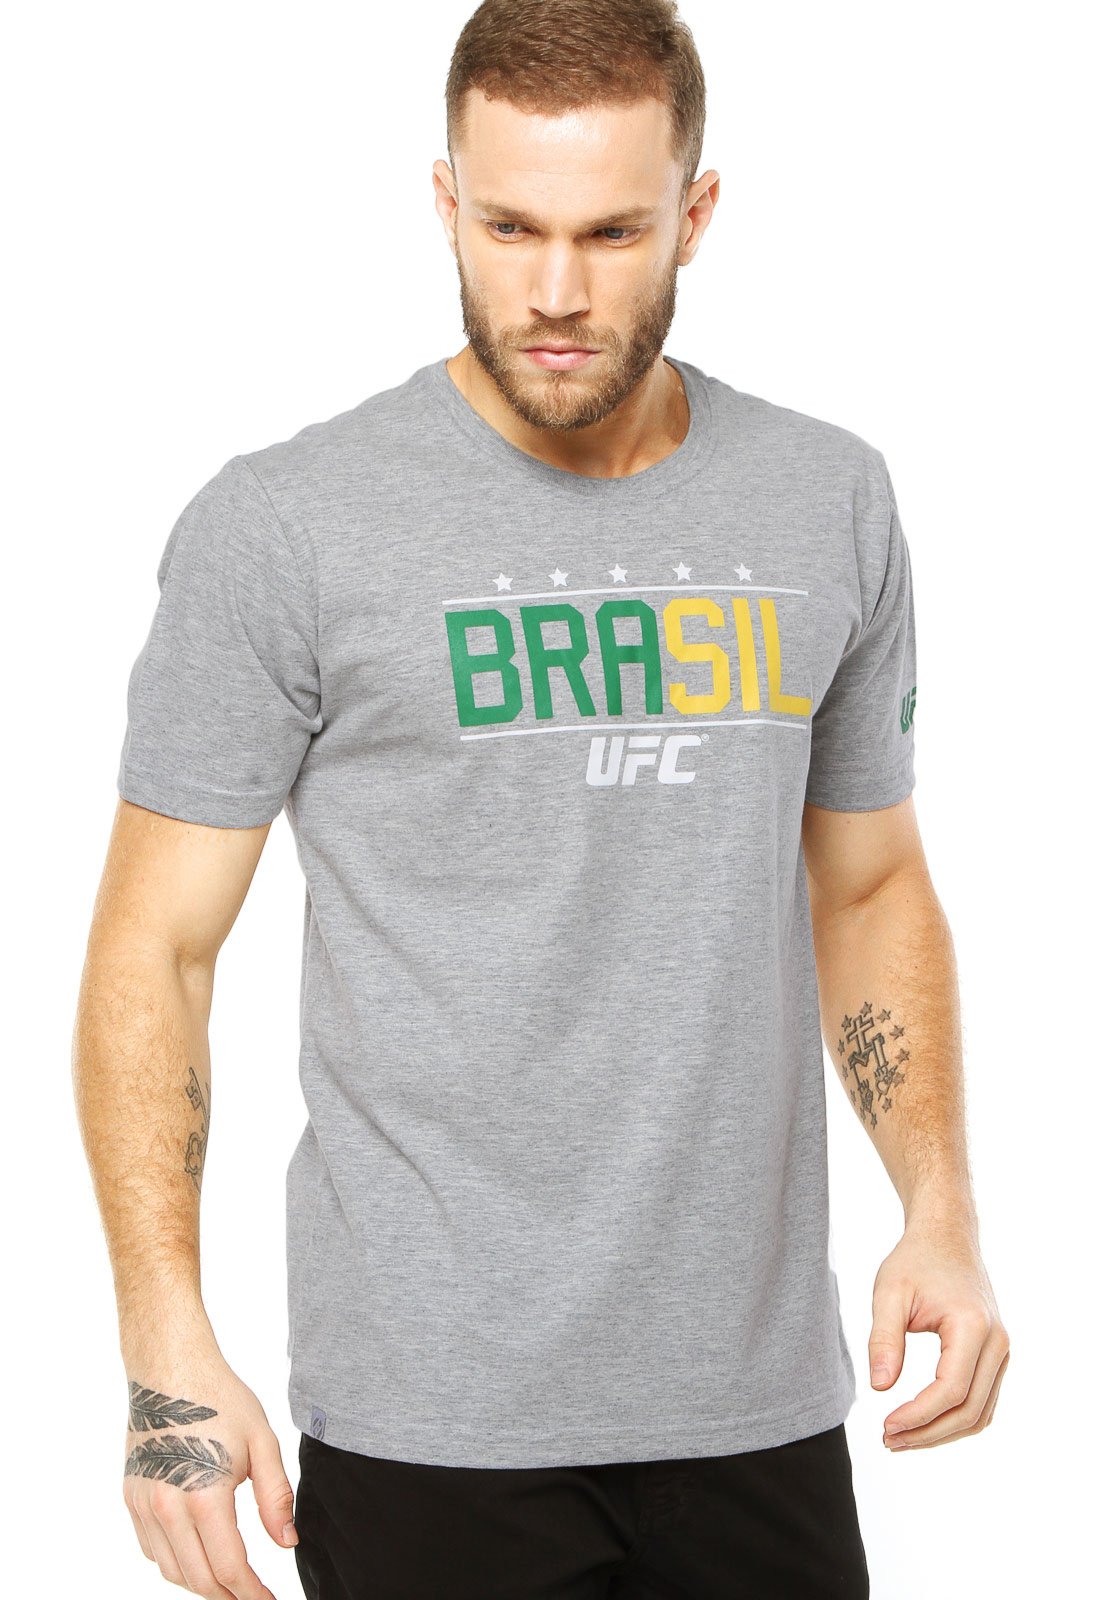 UFC Brasil 